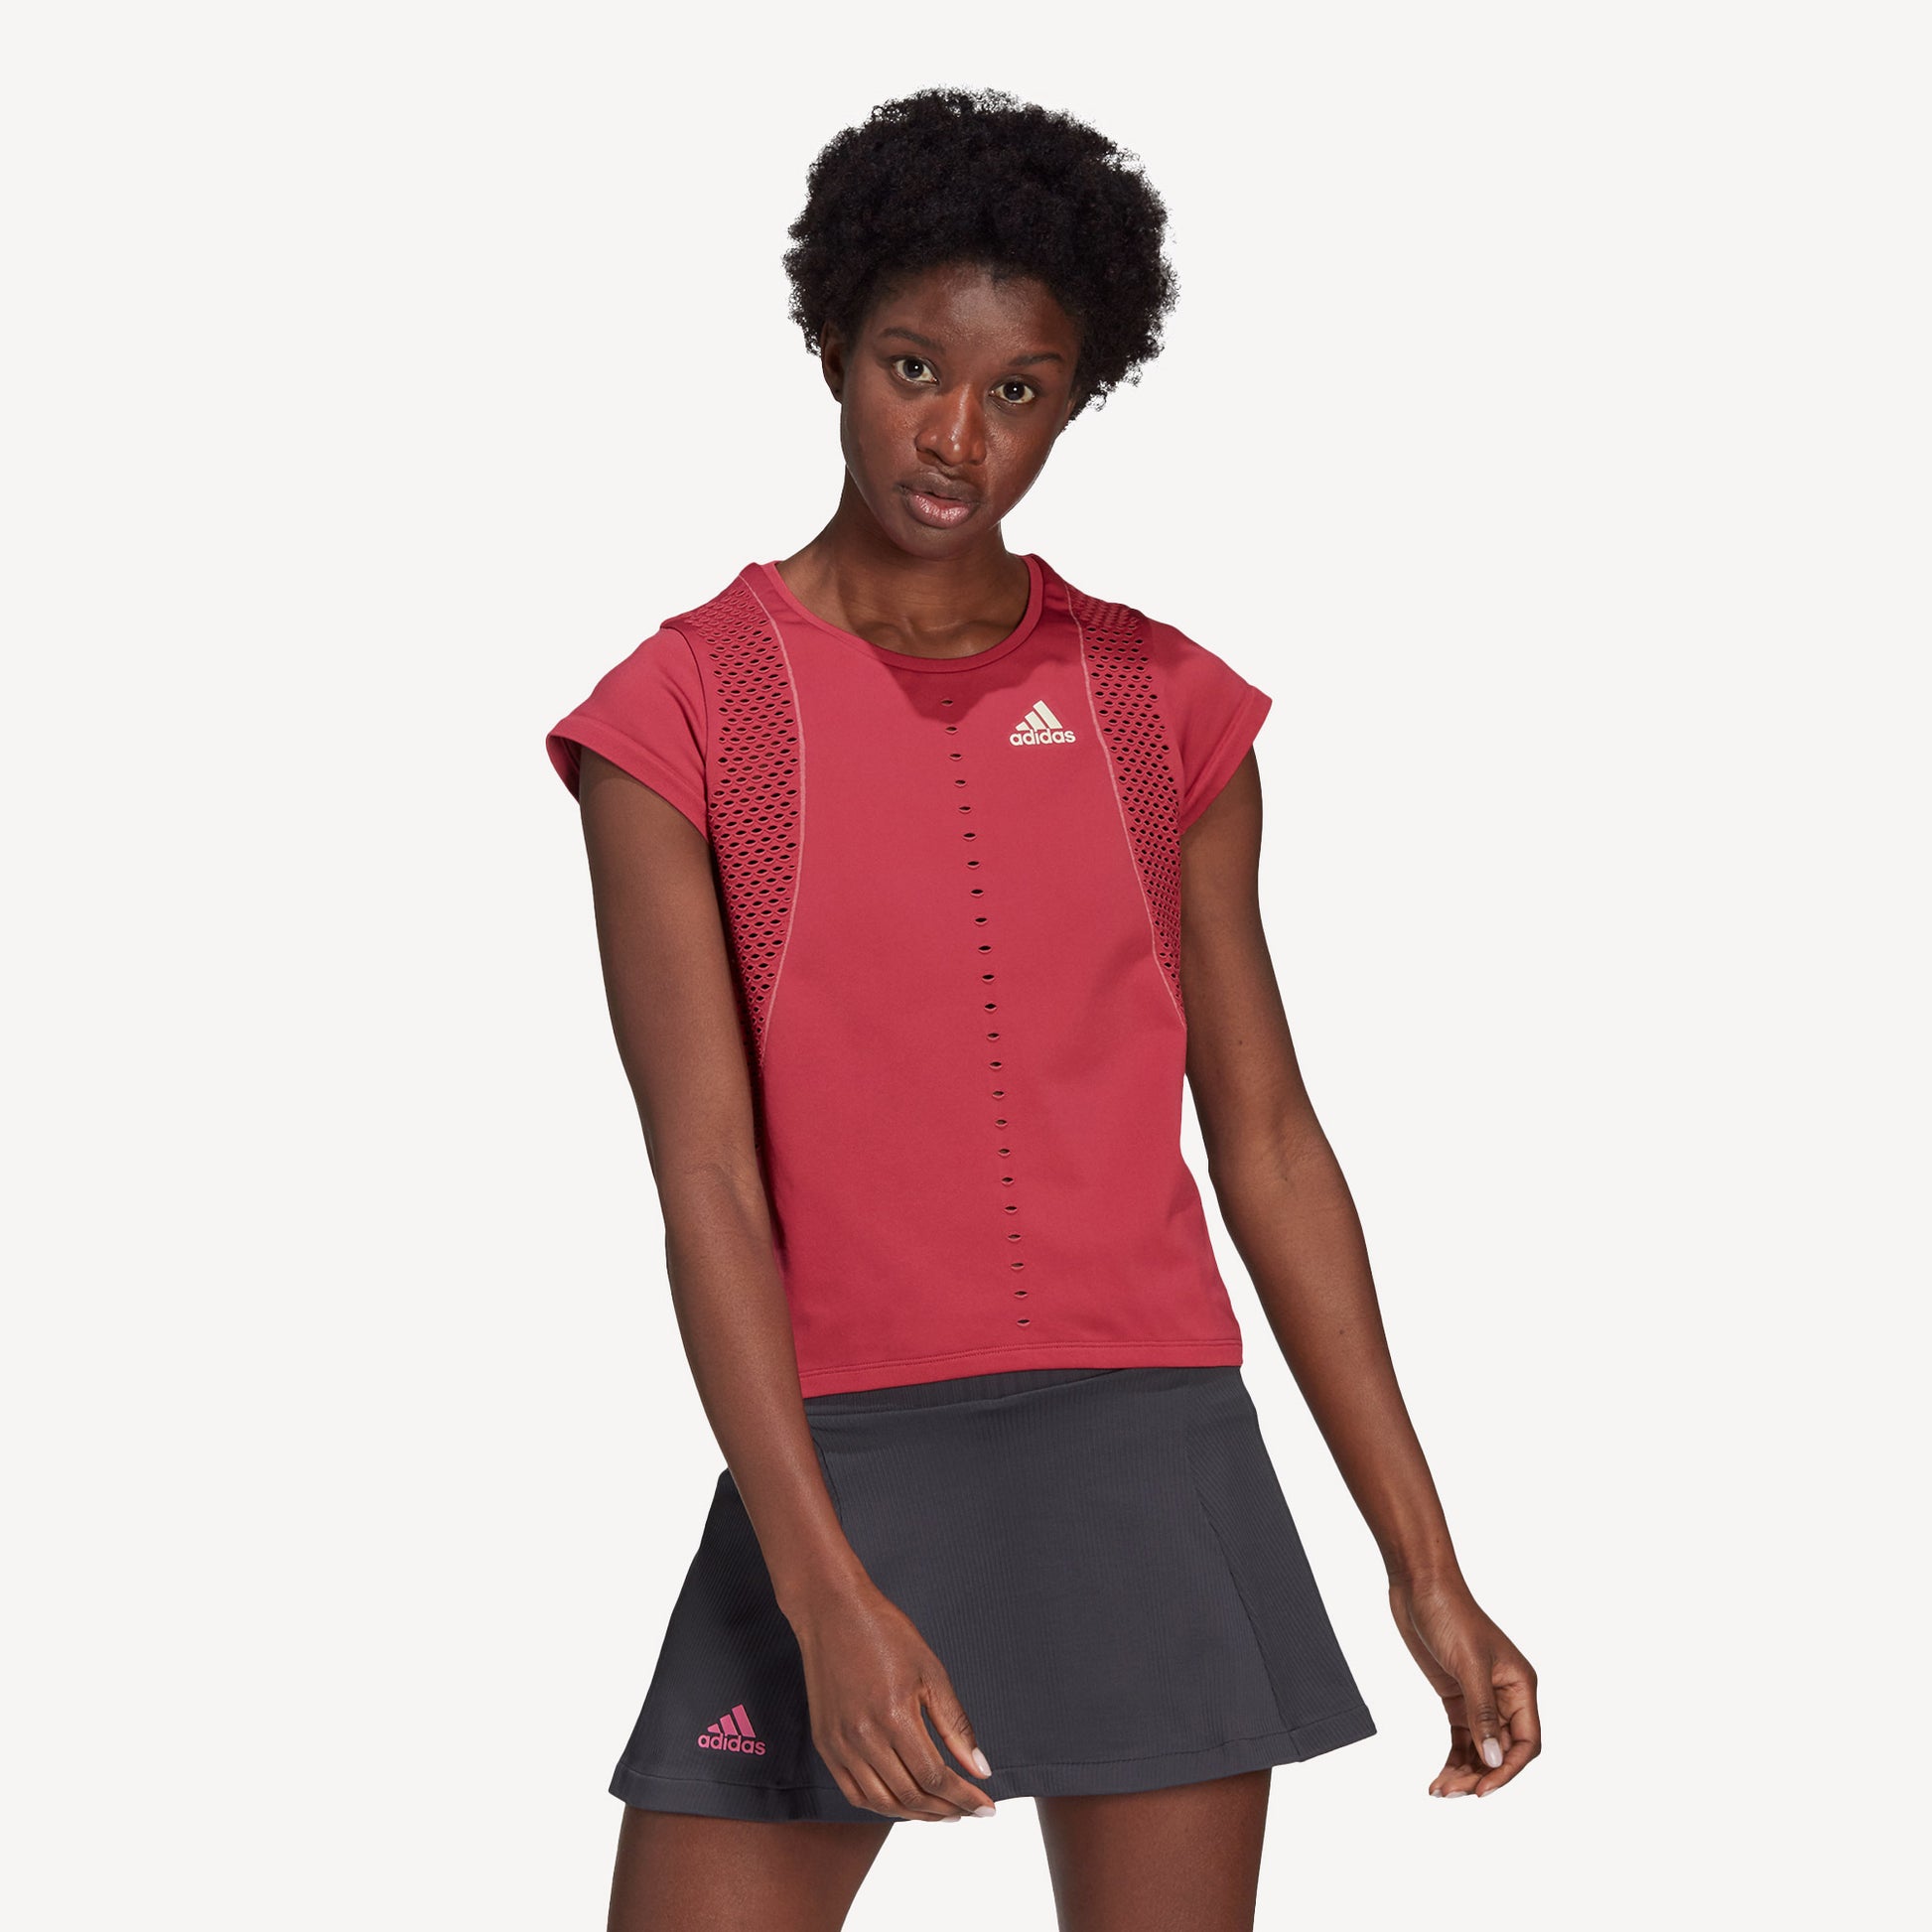 Raad eens met tijd fluweel adidas Primeknit PrimeBlauw Dames Tennisshirt – Tennis Only